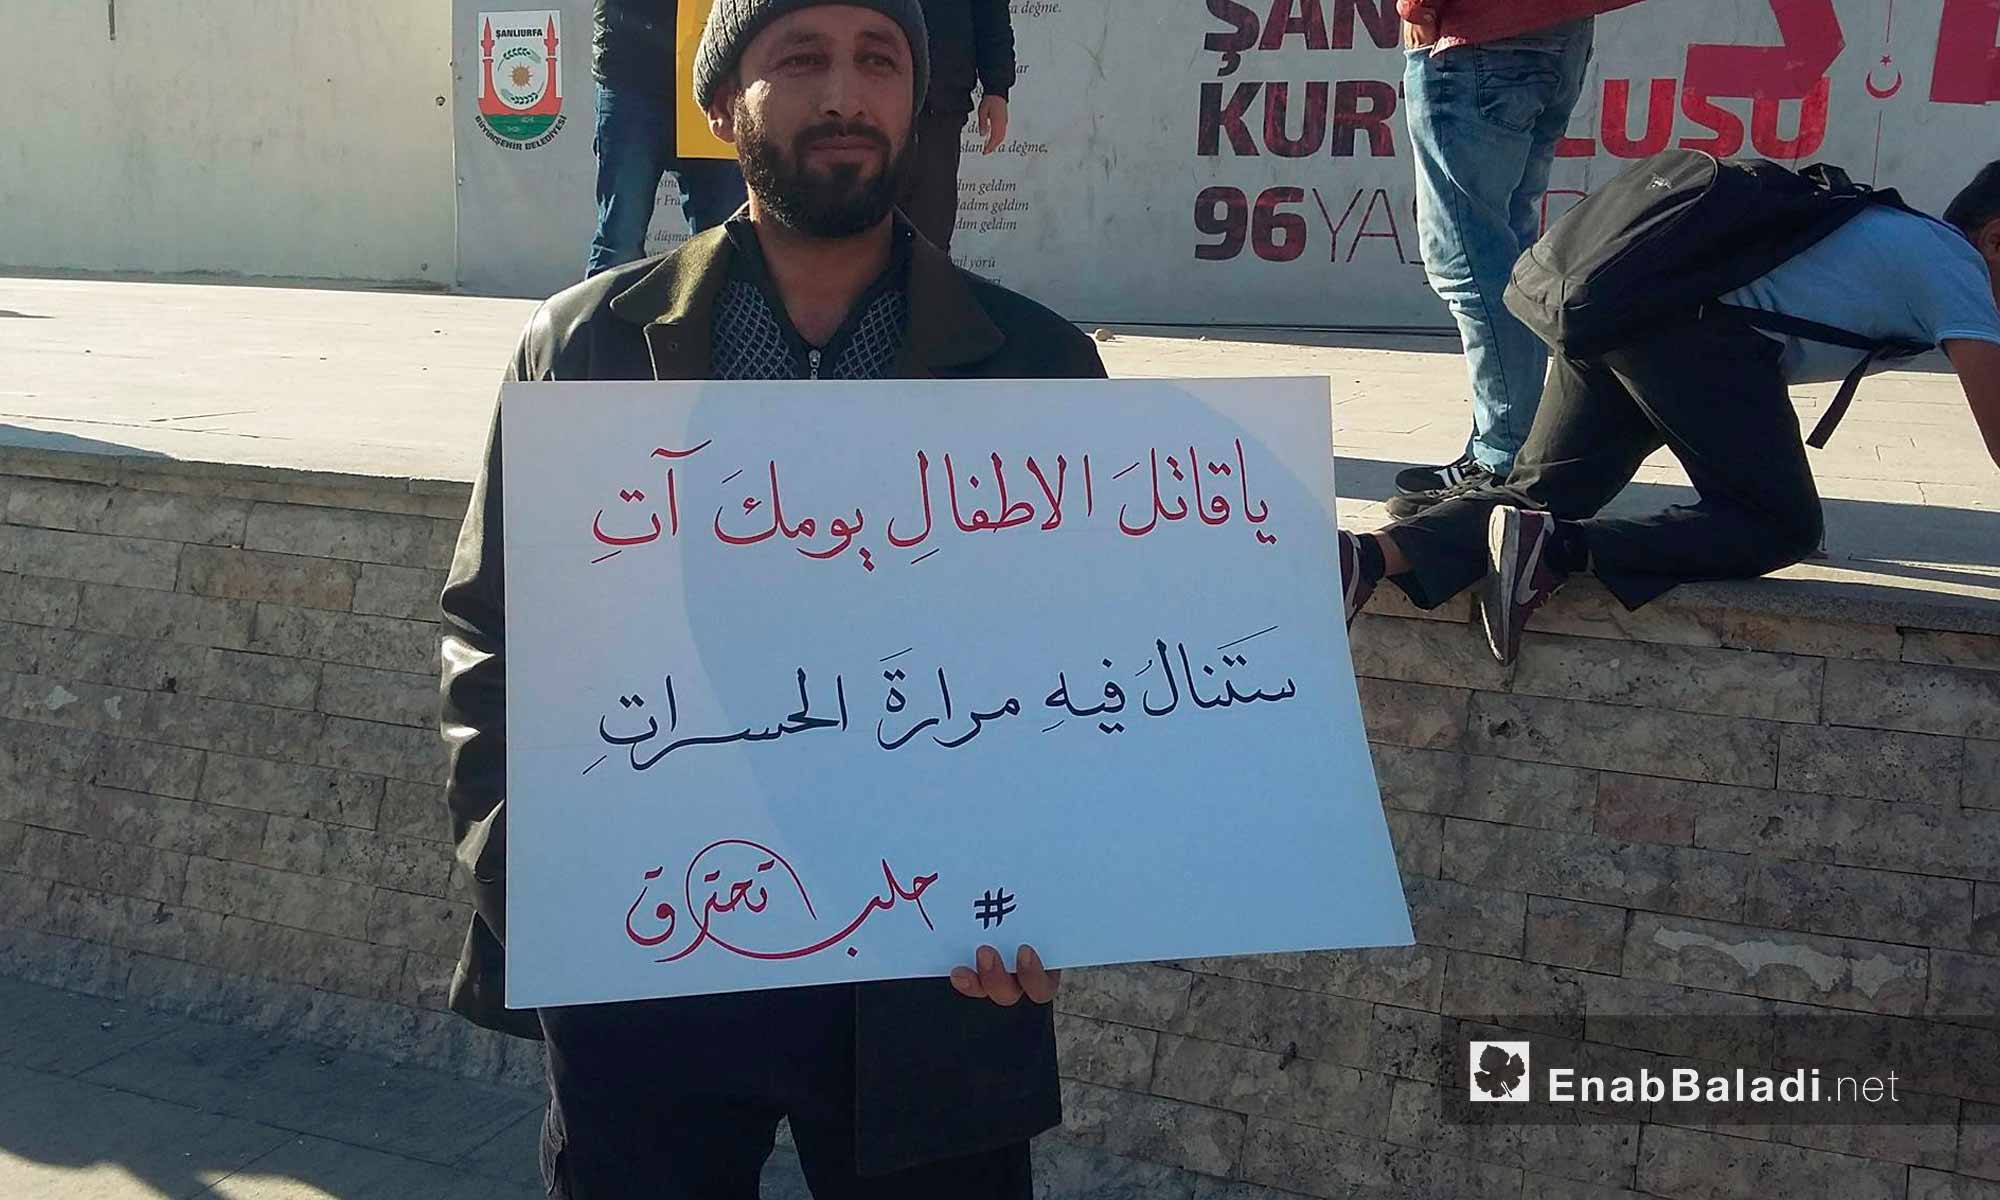 سوري يحمل لافتة تضامنية مع حلب من أورفة التركية - 25 تشرين الثاني 2016 (عنب بلدي)
